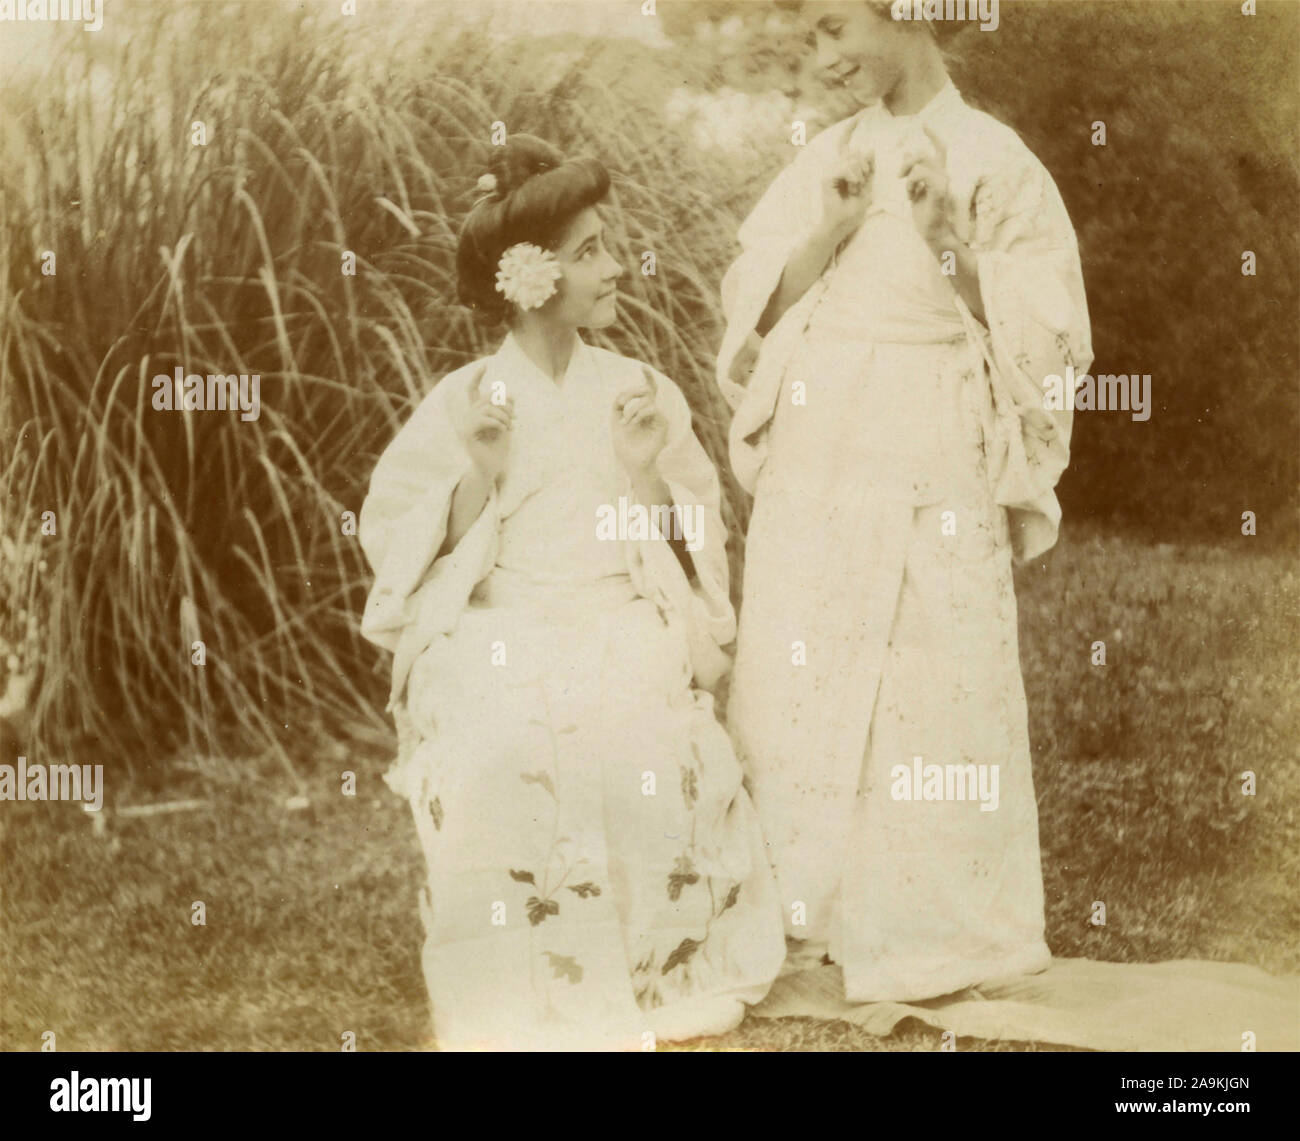 Two women with the kimono, Italy Stock Photo